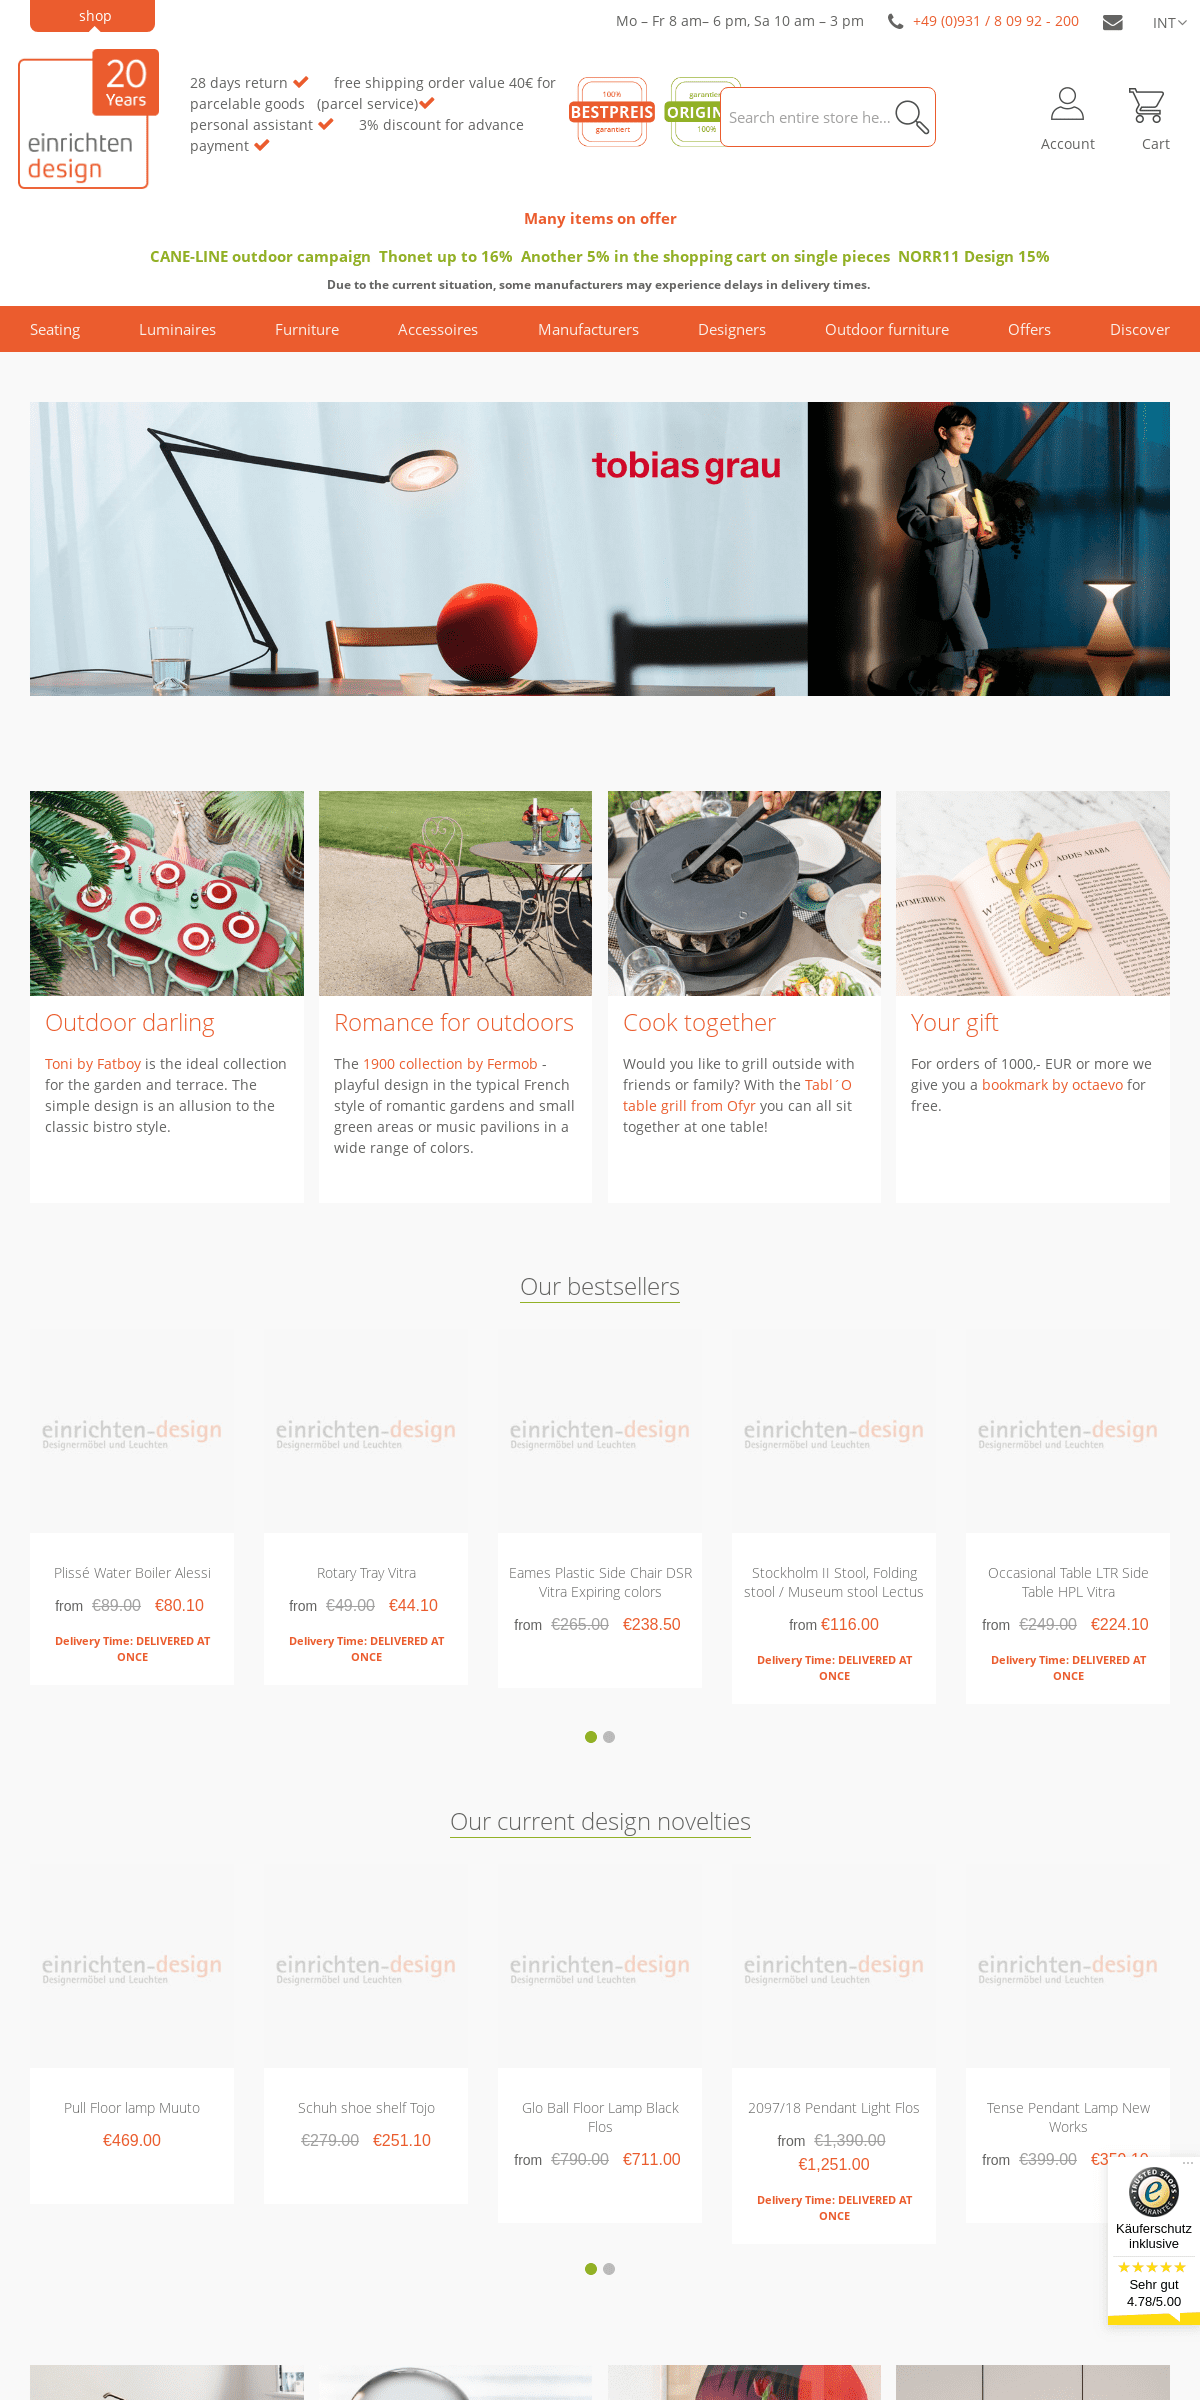 A complete backup of einrichten-design.com